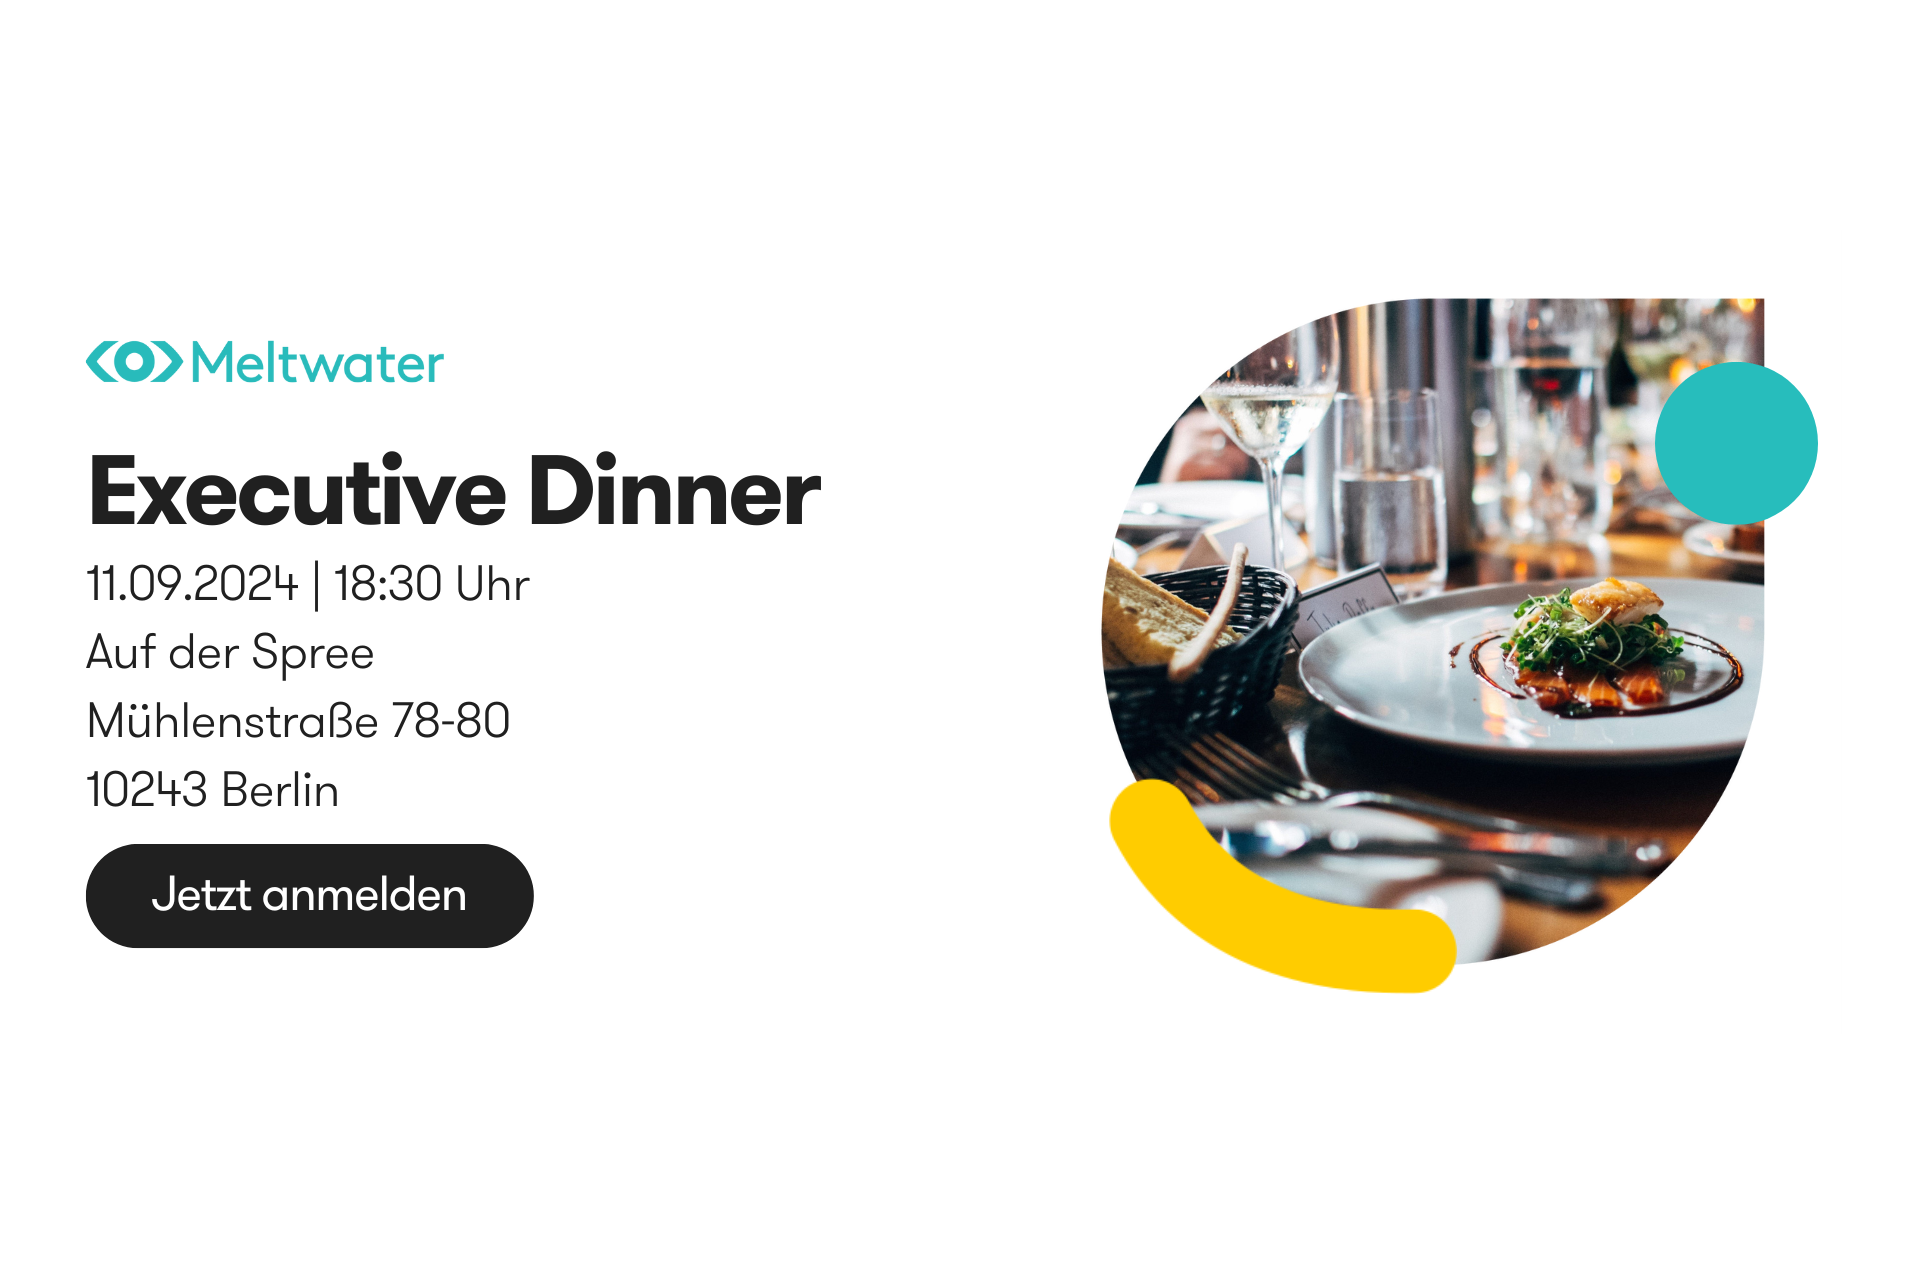 Executive Dinner in Berlin am 11.09. auf der Spree